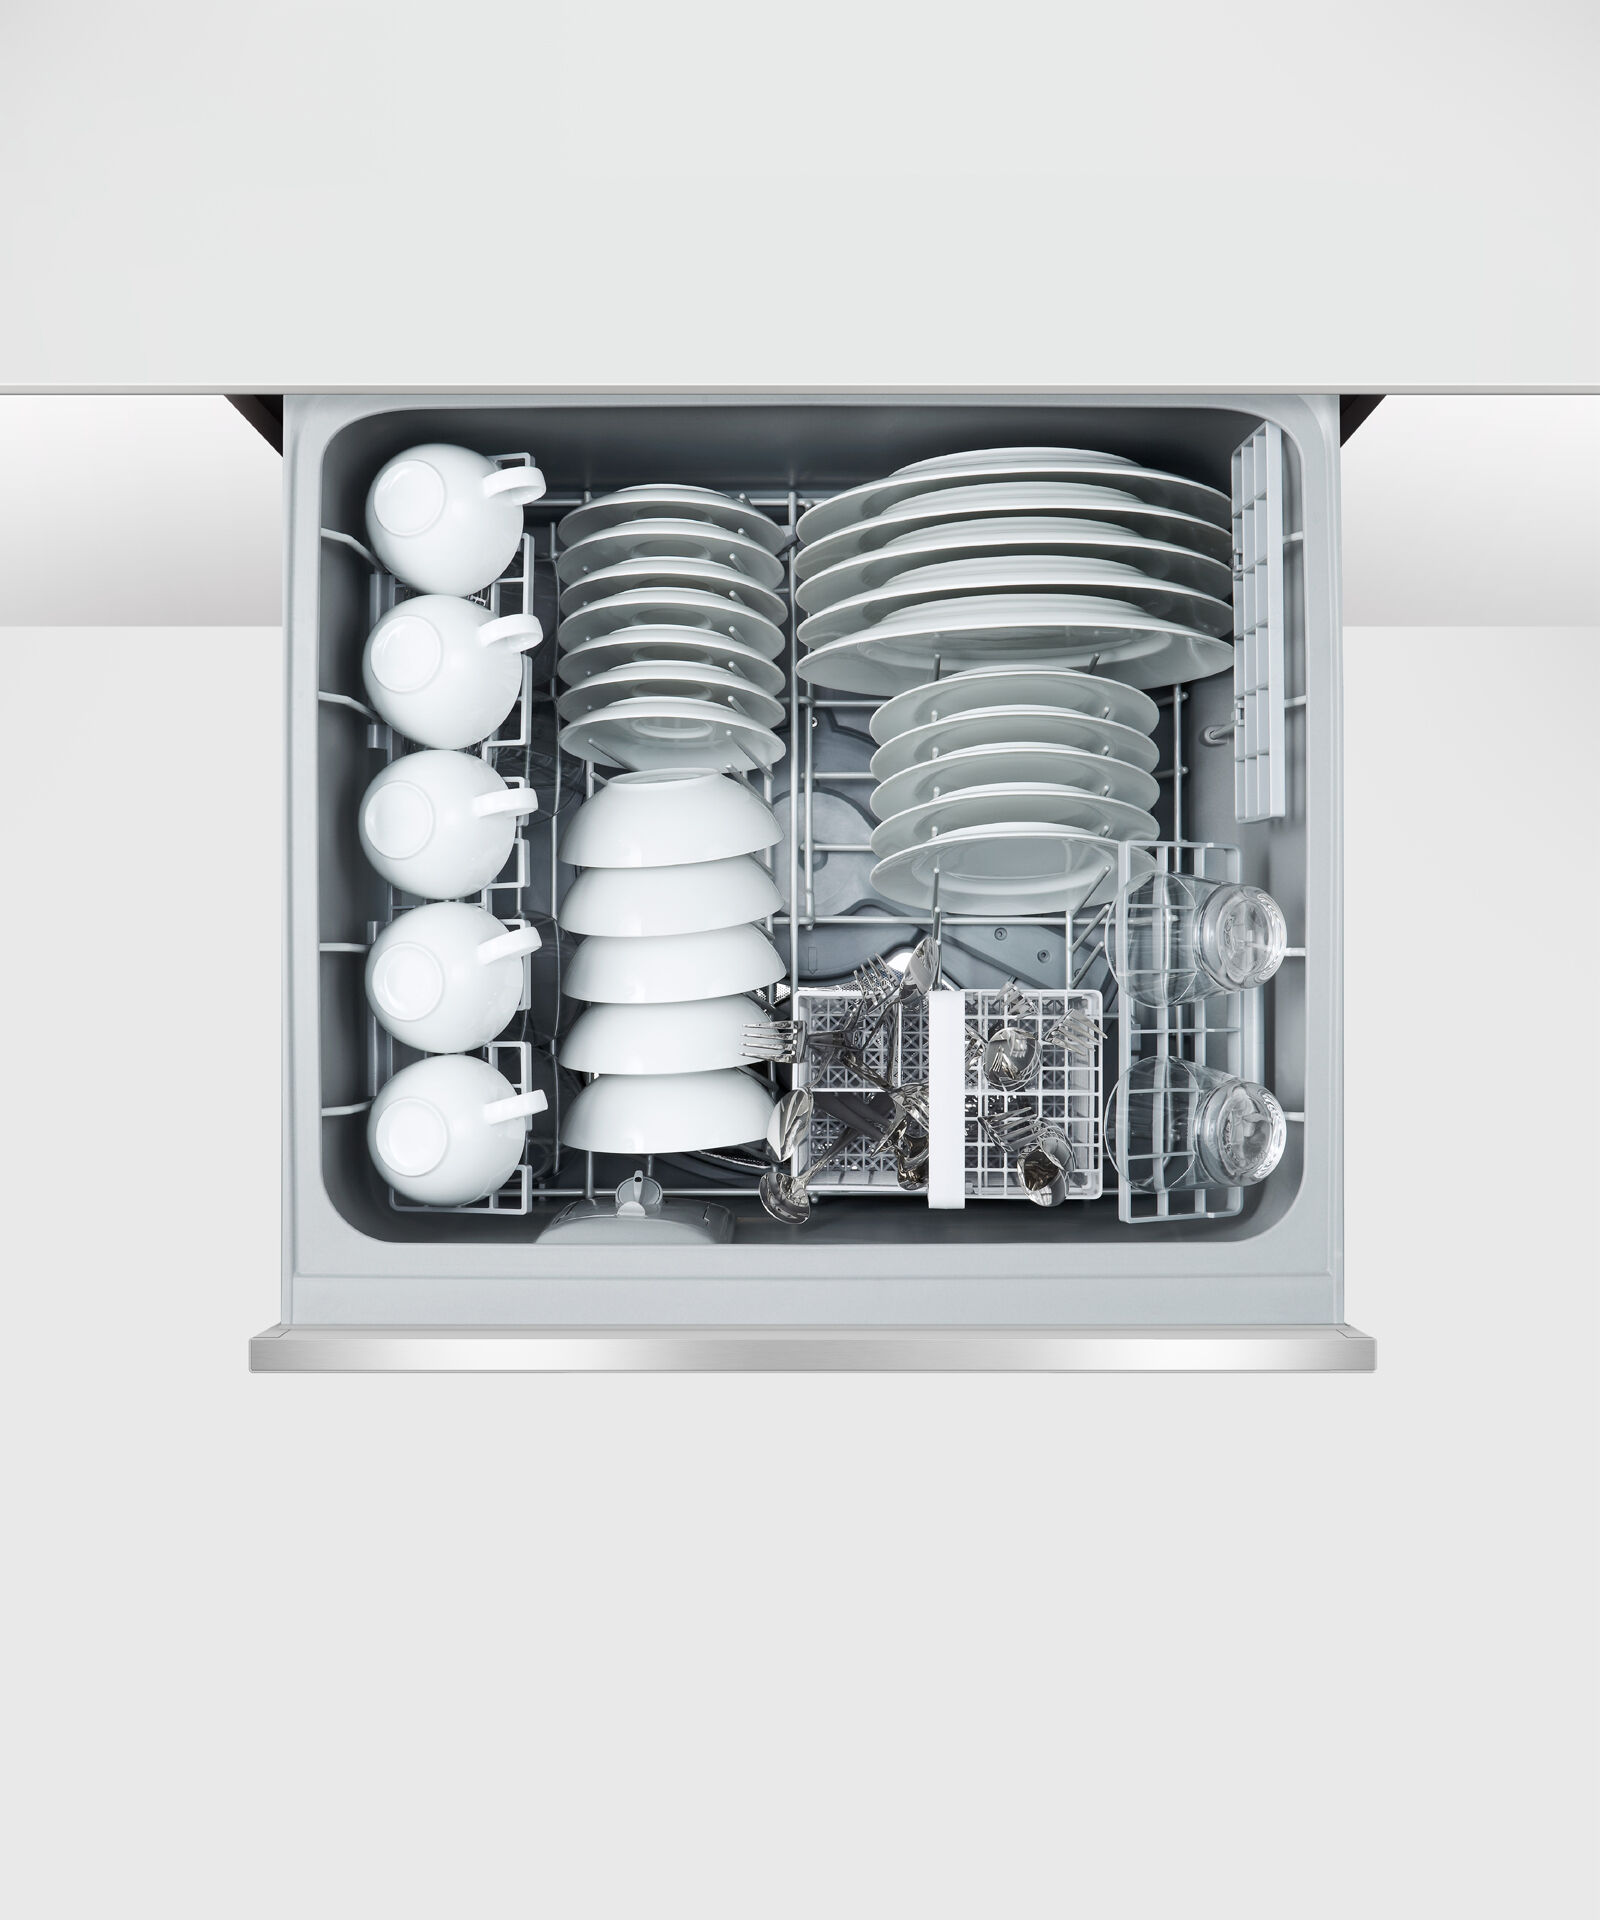 Double DishDrawer™ Dishwasher, Sanitise gallery image 4.0